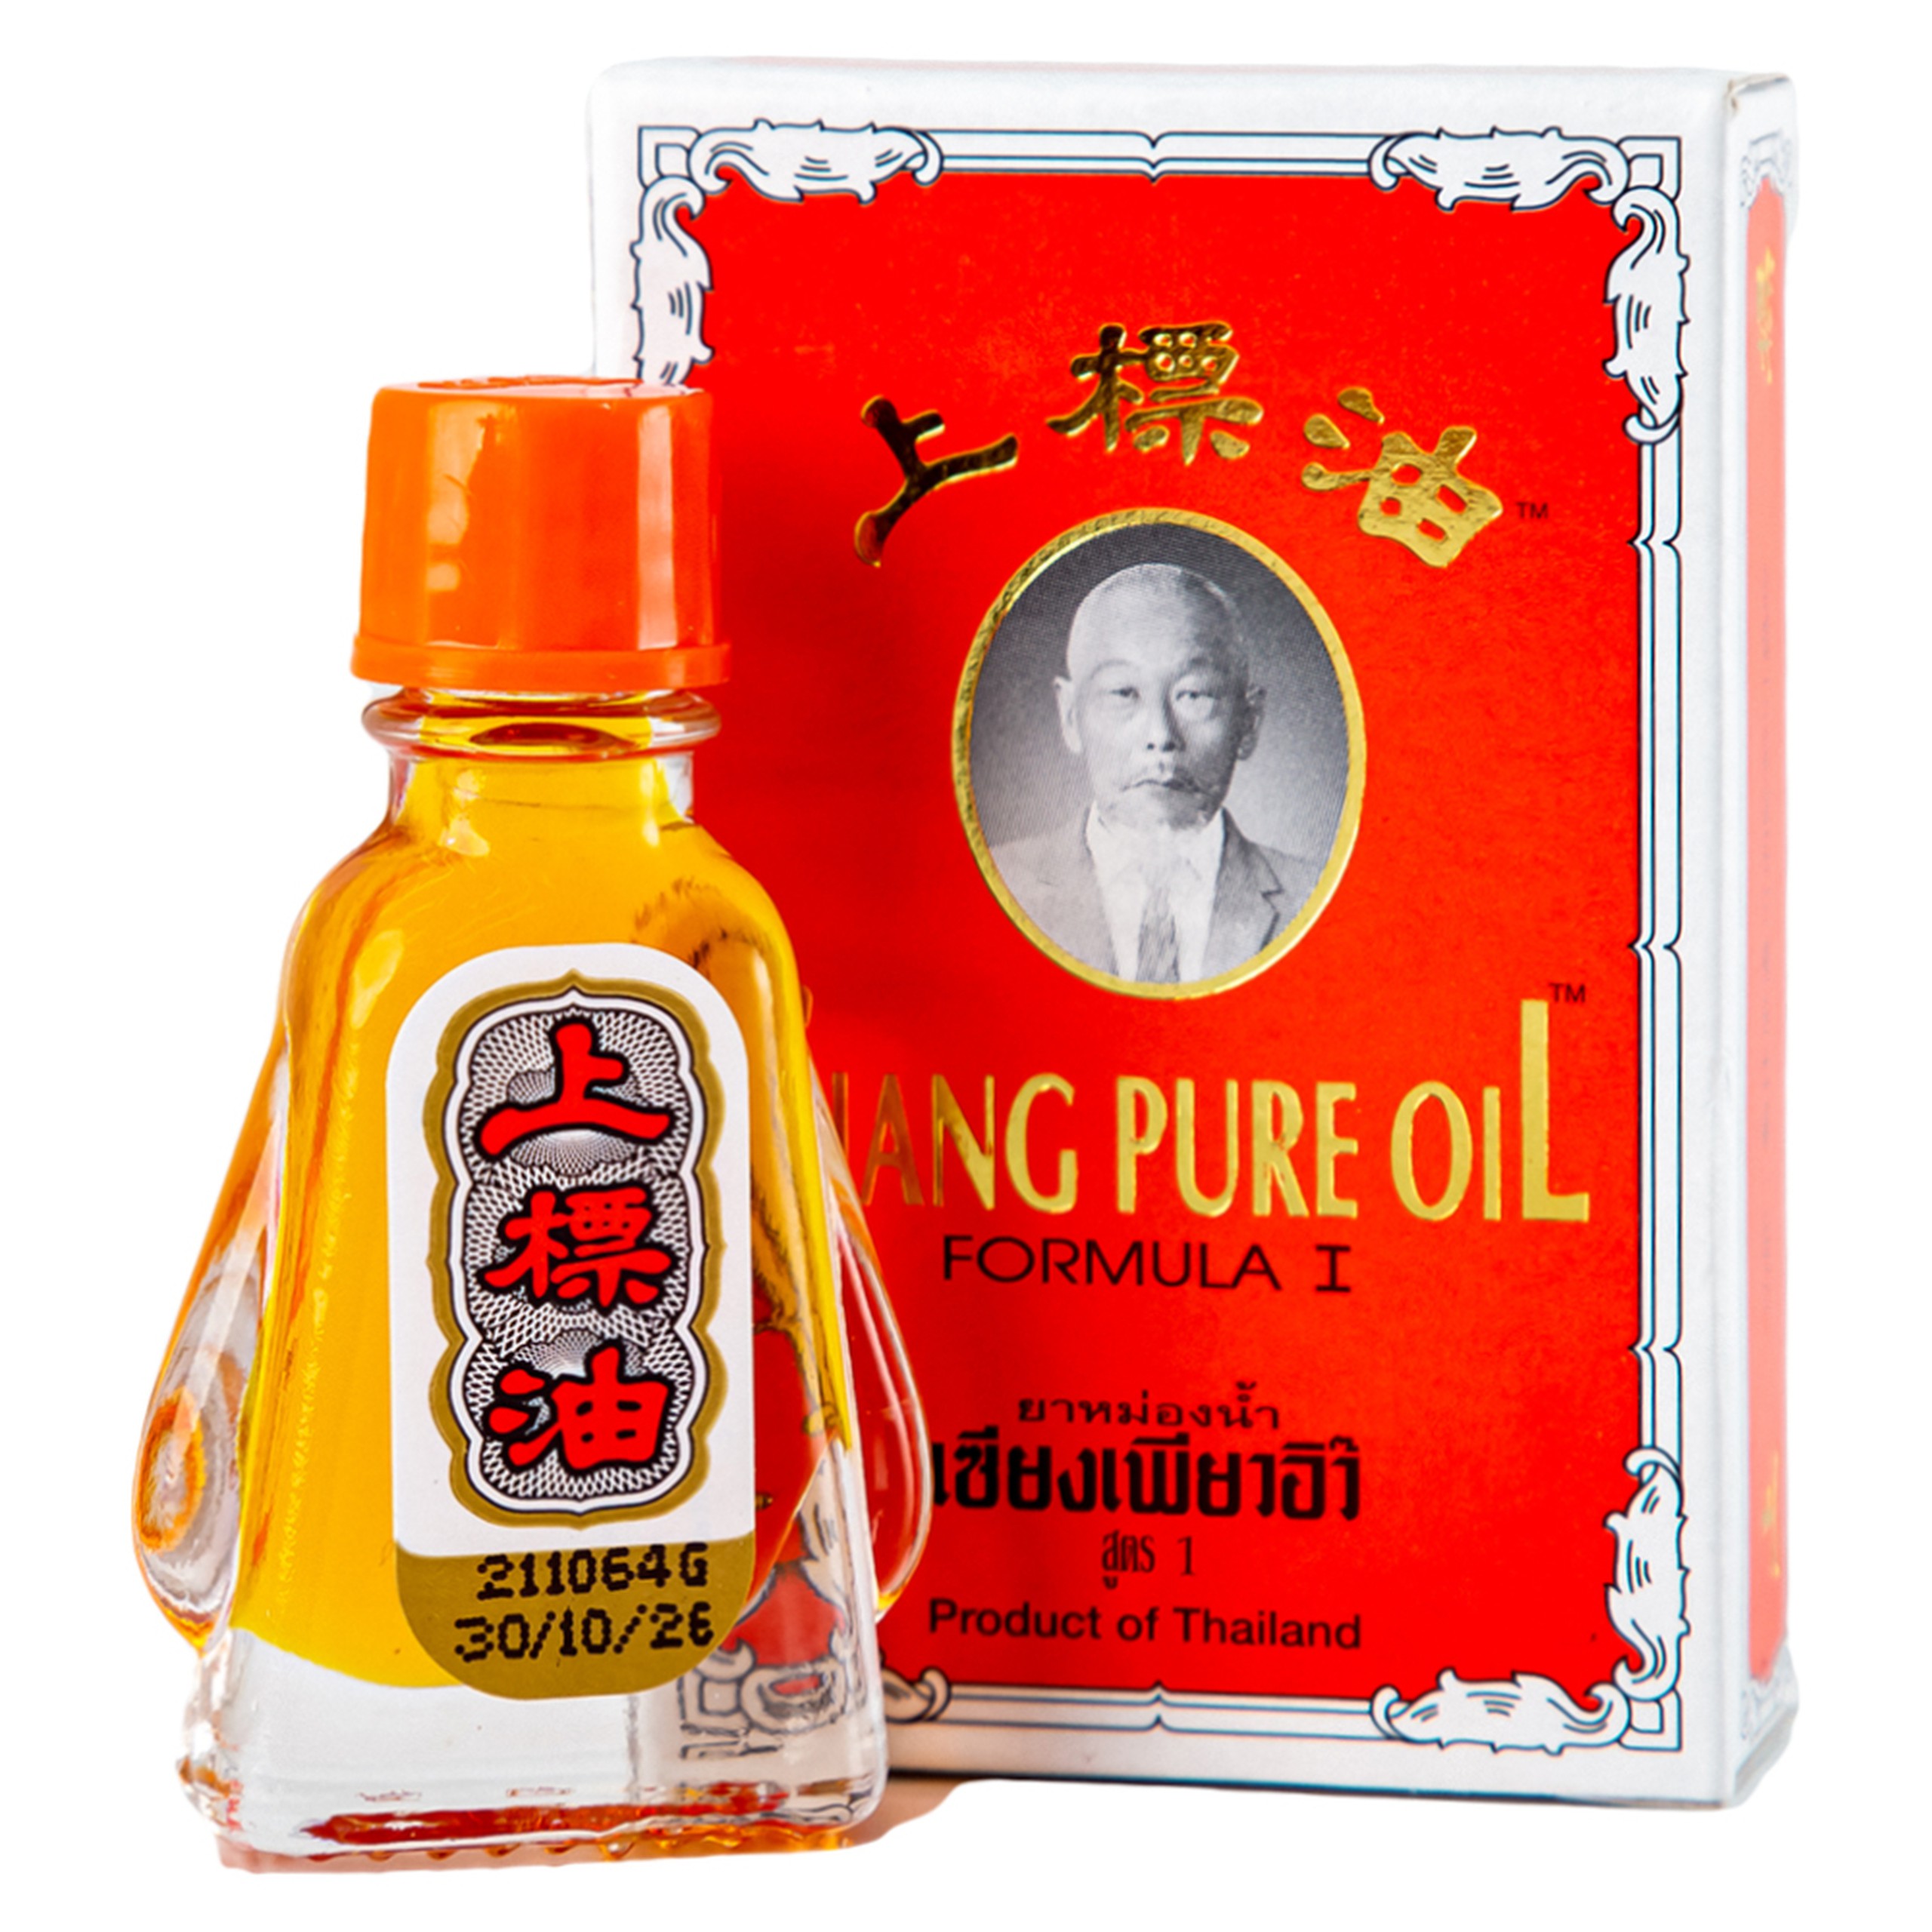 Dầu Siang Pure Oil Formula I giảm triệu chứng cảm lạnh, nhức đầu, chóng mặt, ngạt mũi (12 chai x 3ml)